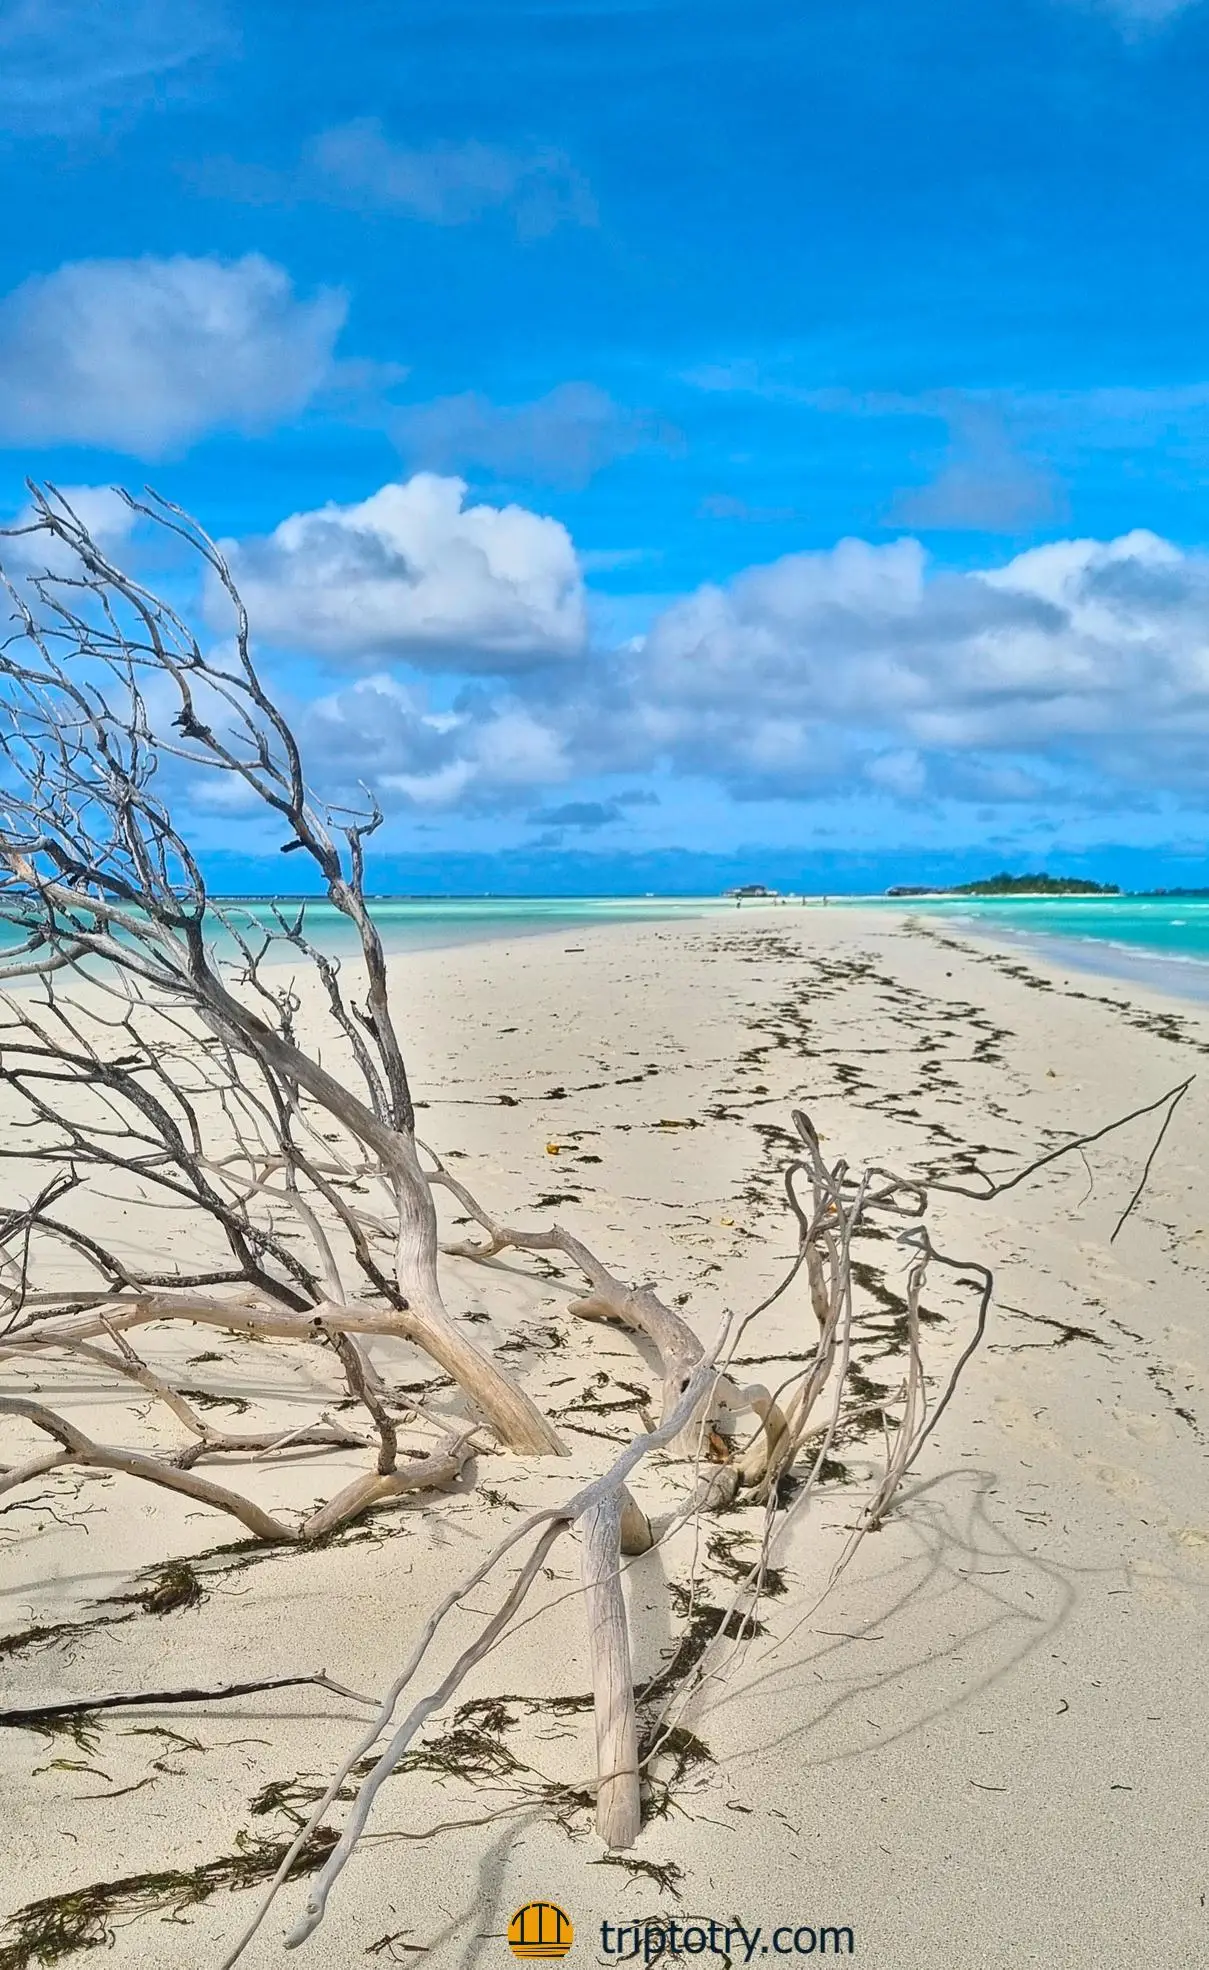 Viaggio alle Maldive fai da te - sand bank di sabbia bianca nel mare azzurro delle Maldive - Maldives diy travel